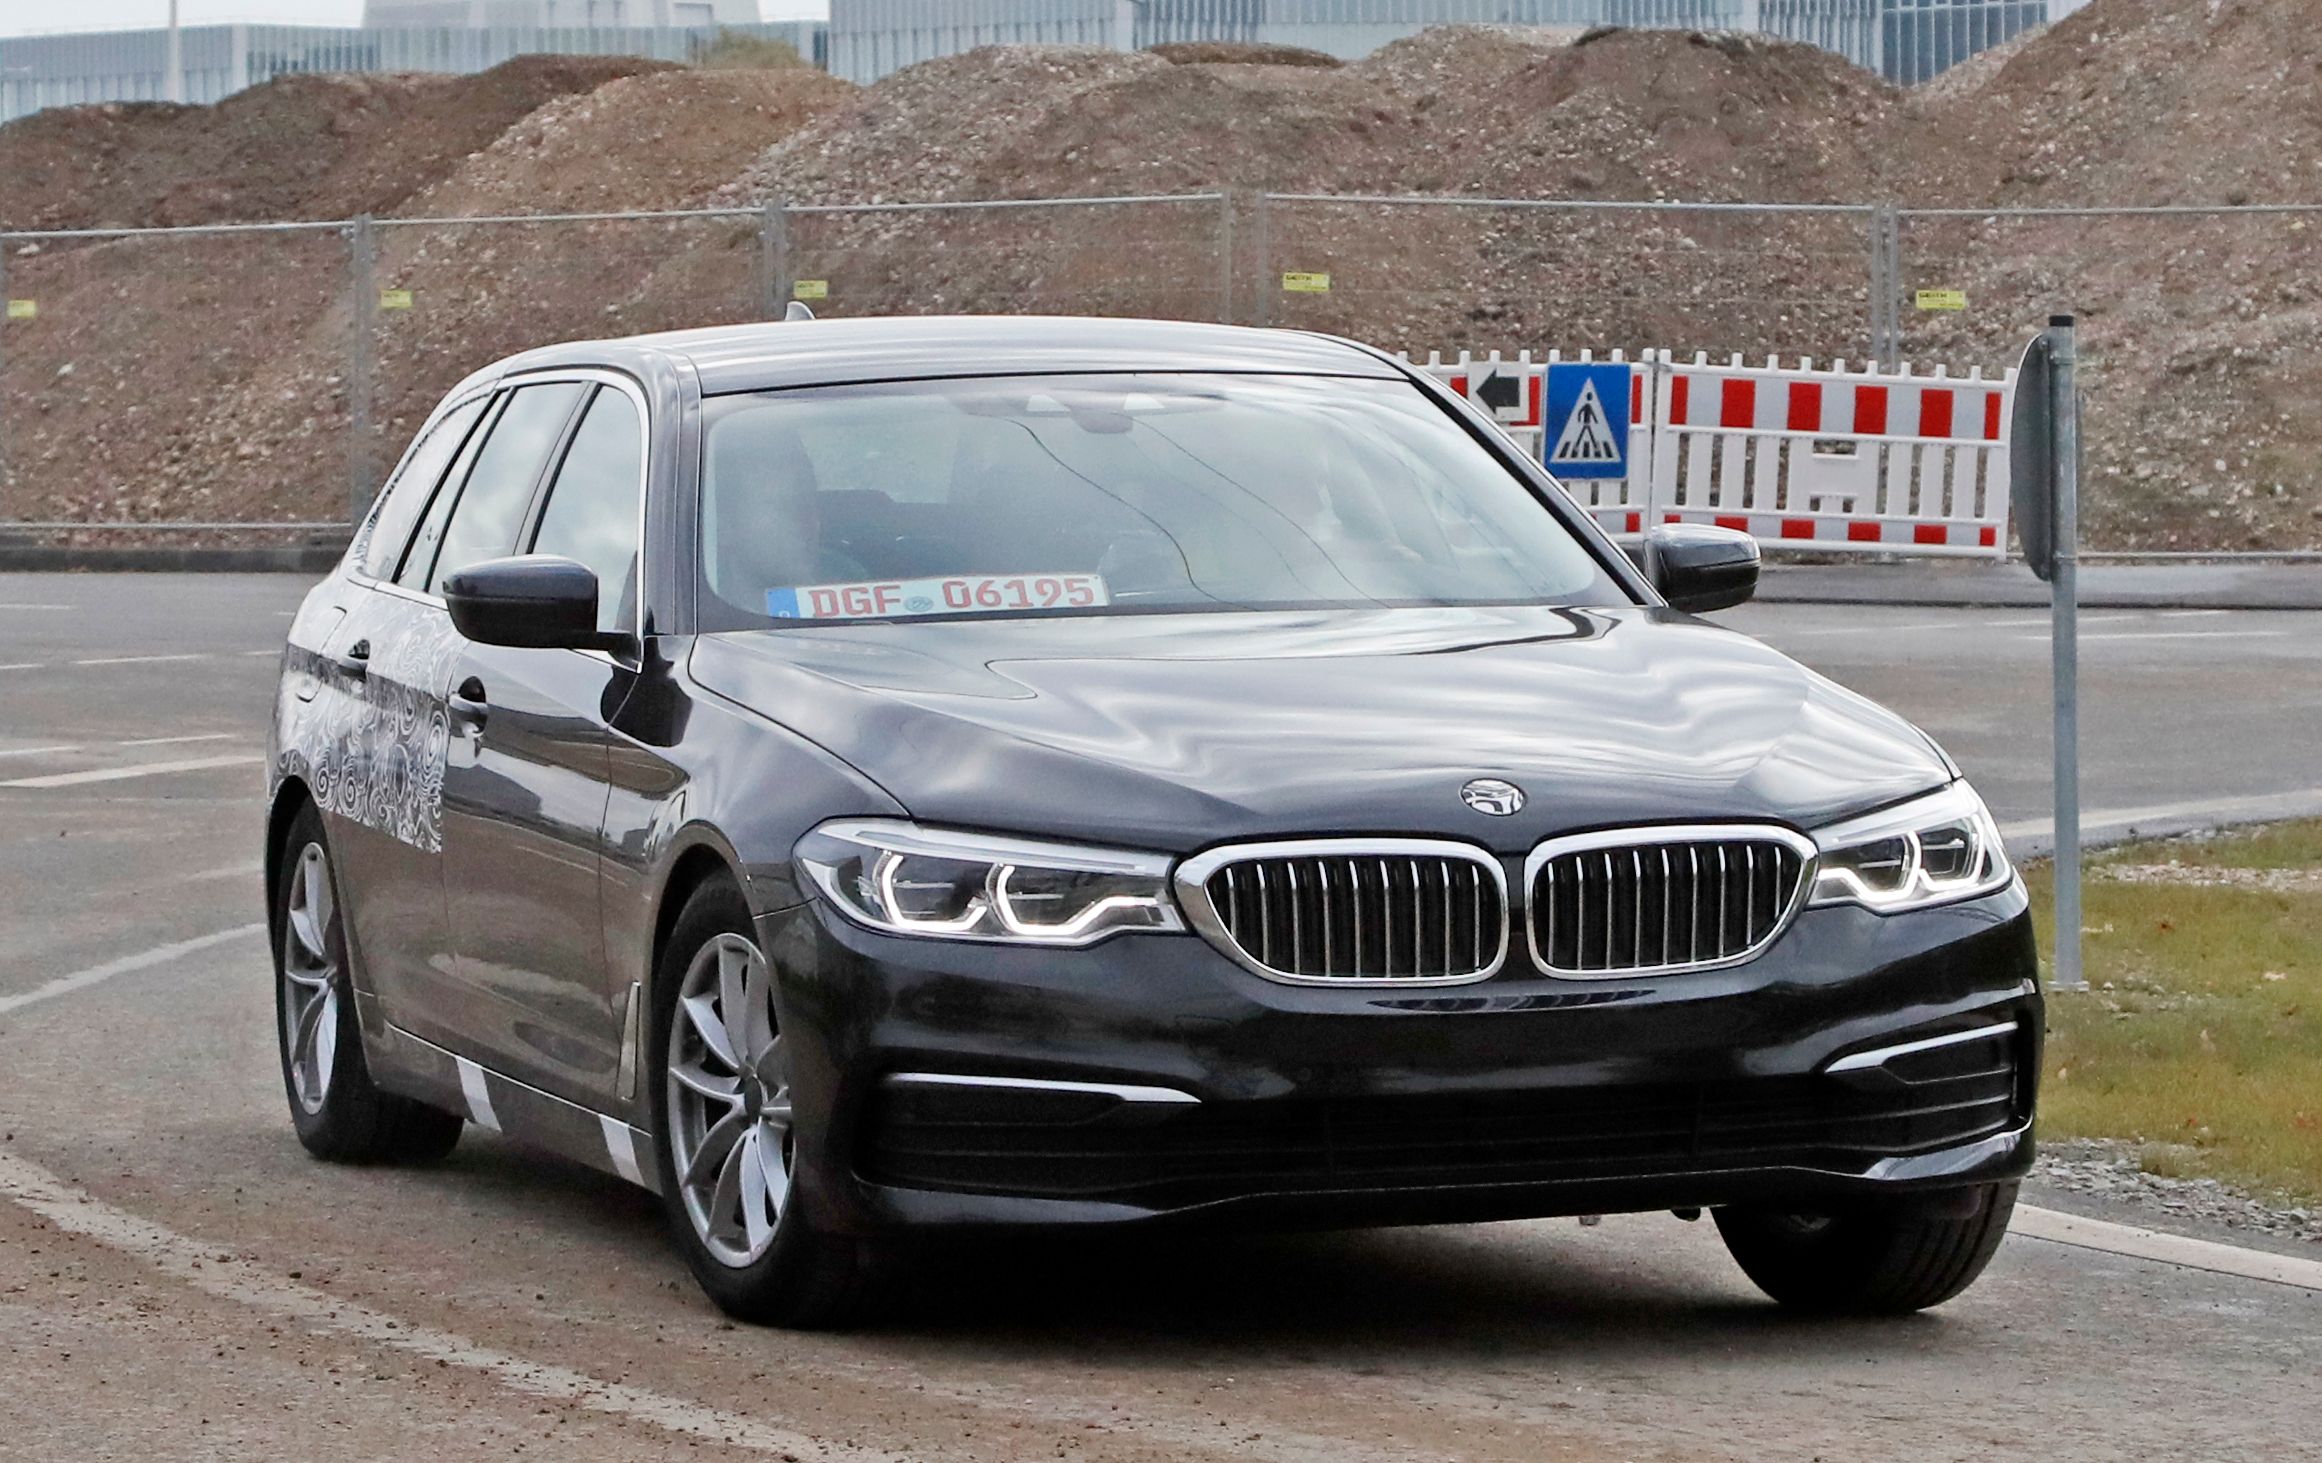 2018 BMW 5 Series Touring